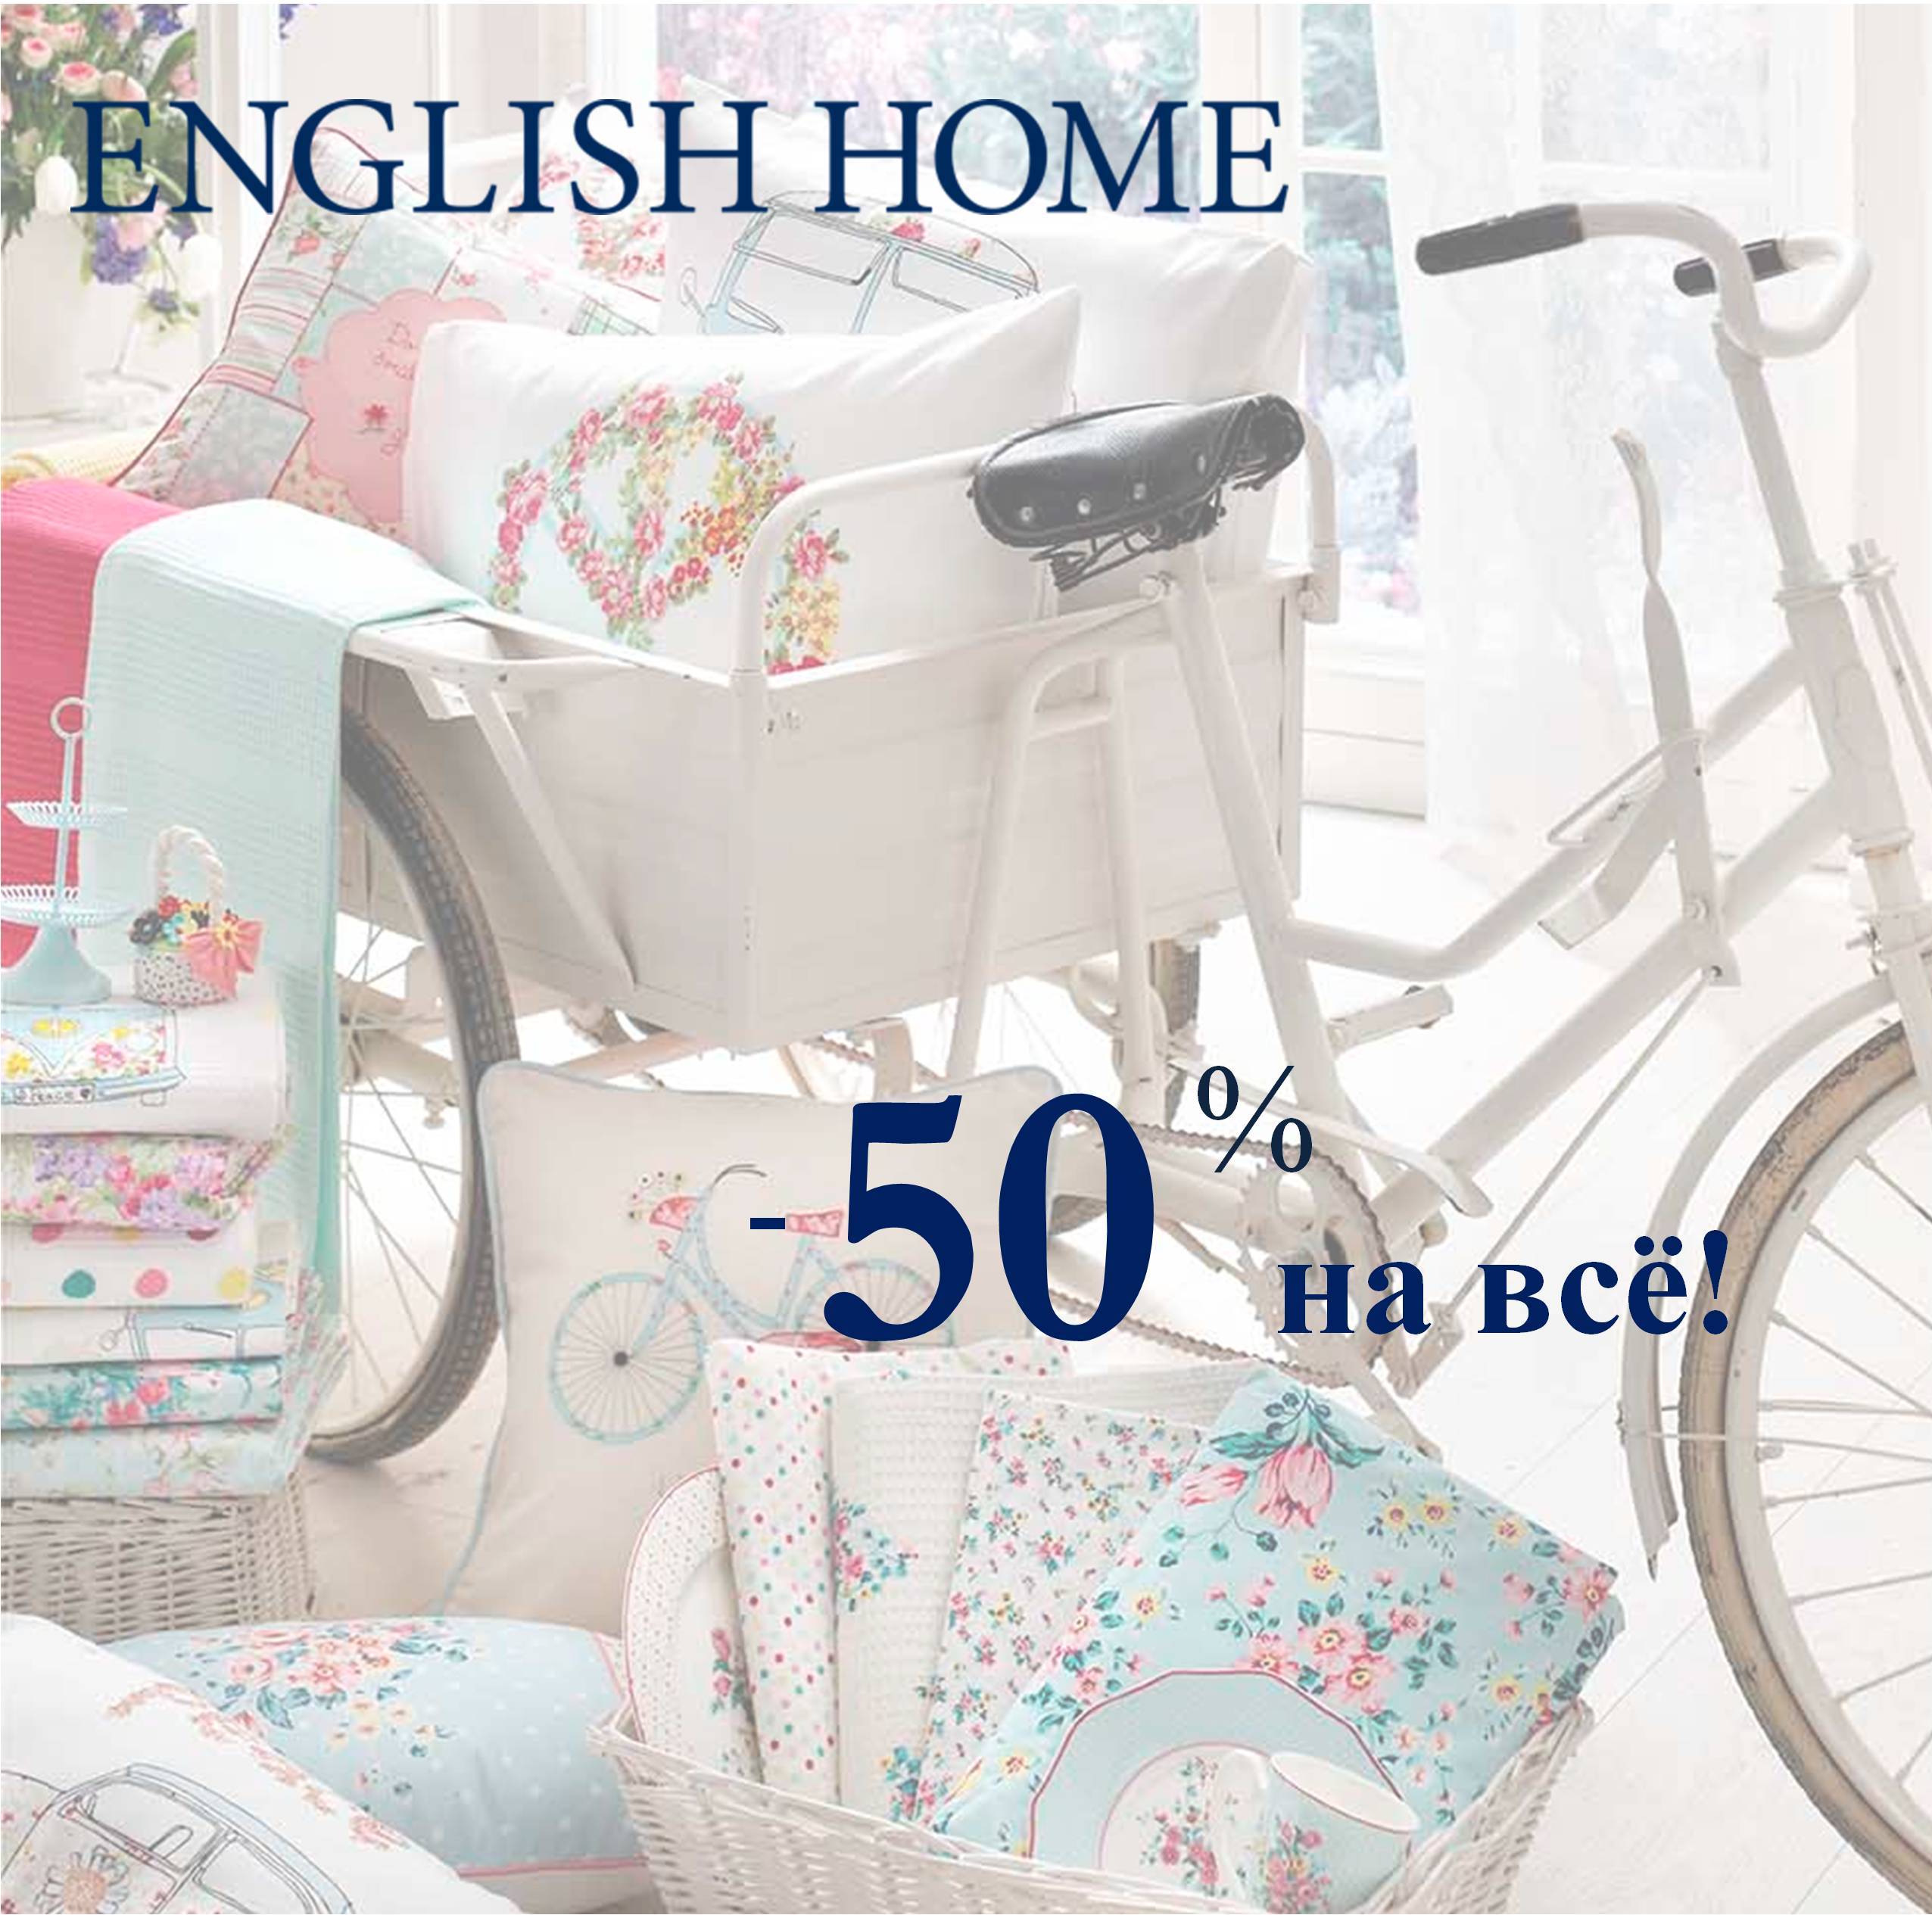 English Home: всё - за полцены!